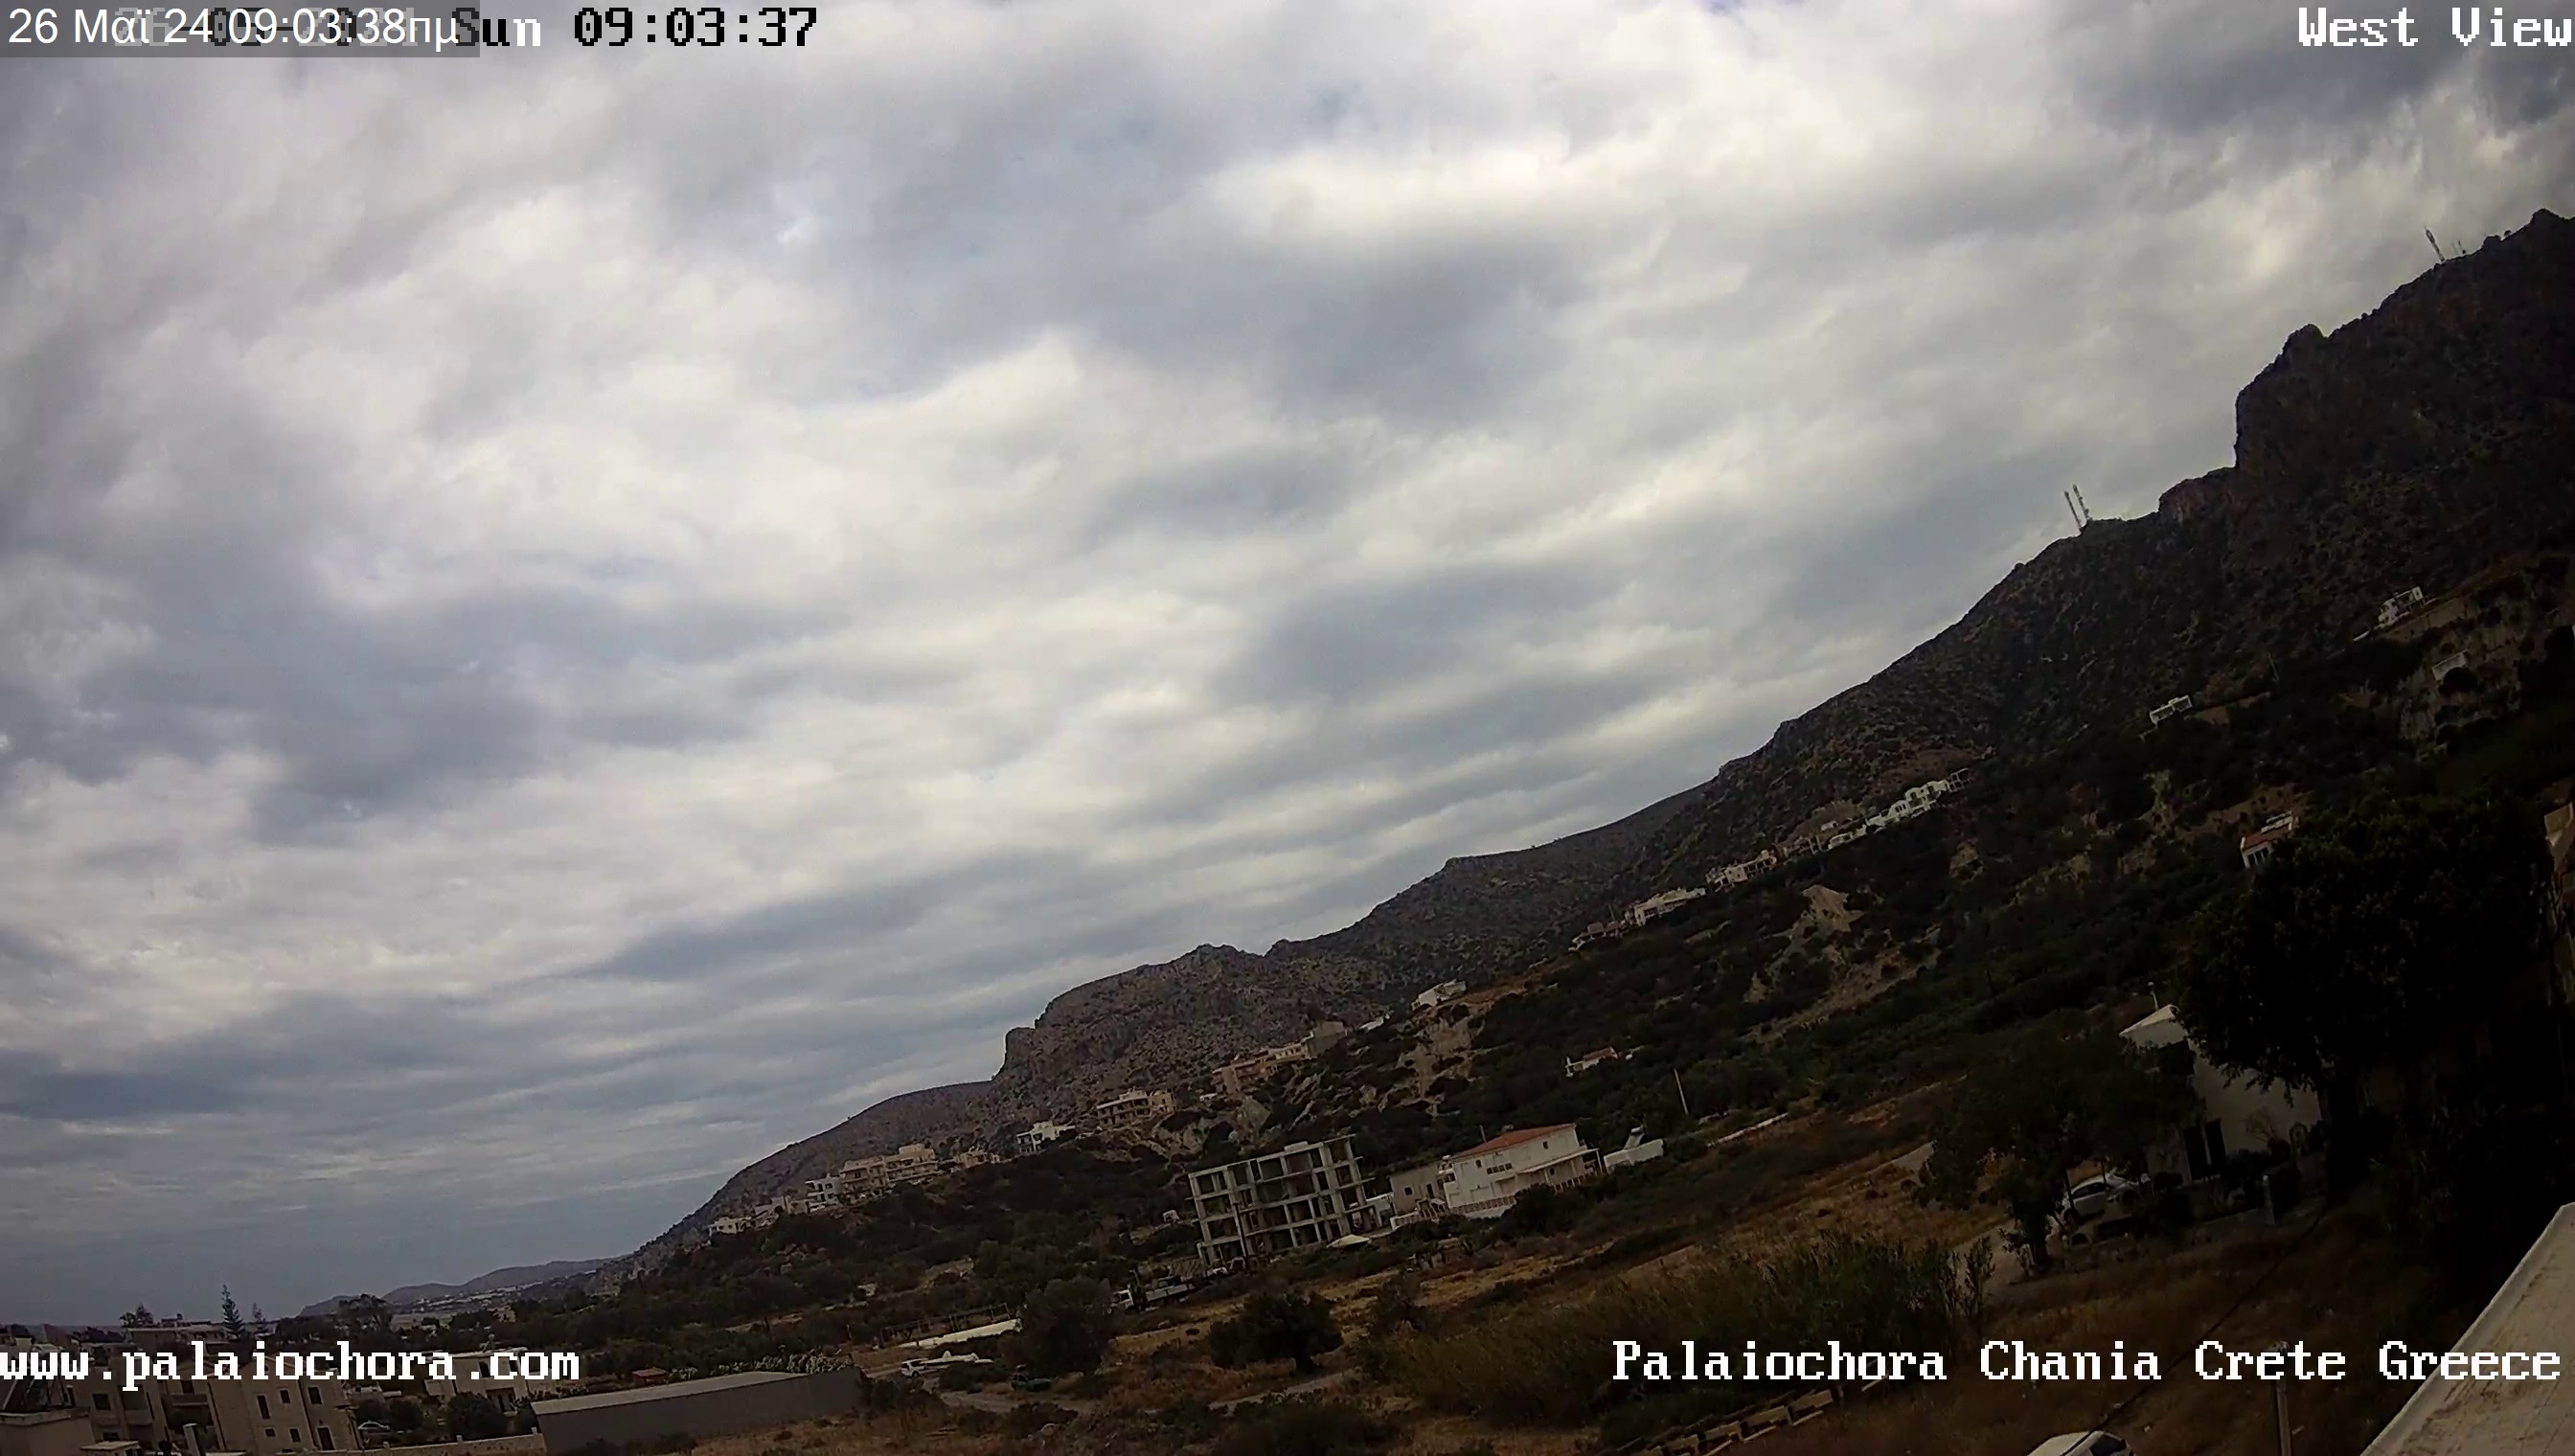 Palaiochora (Creta) Ven. 09:08